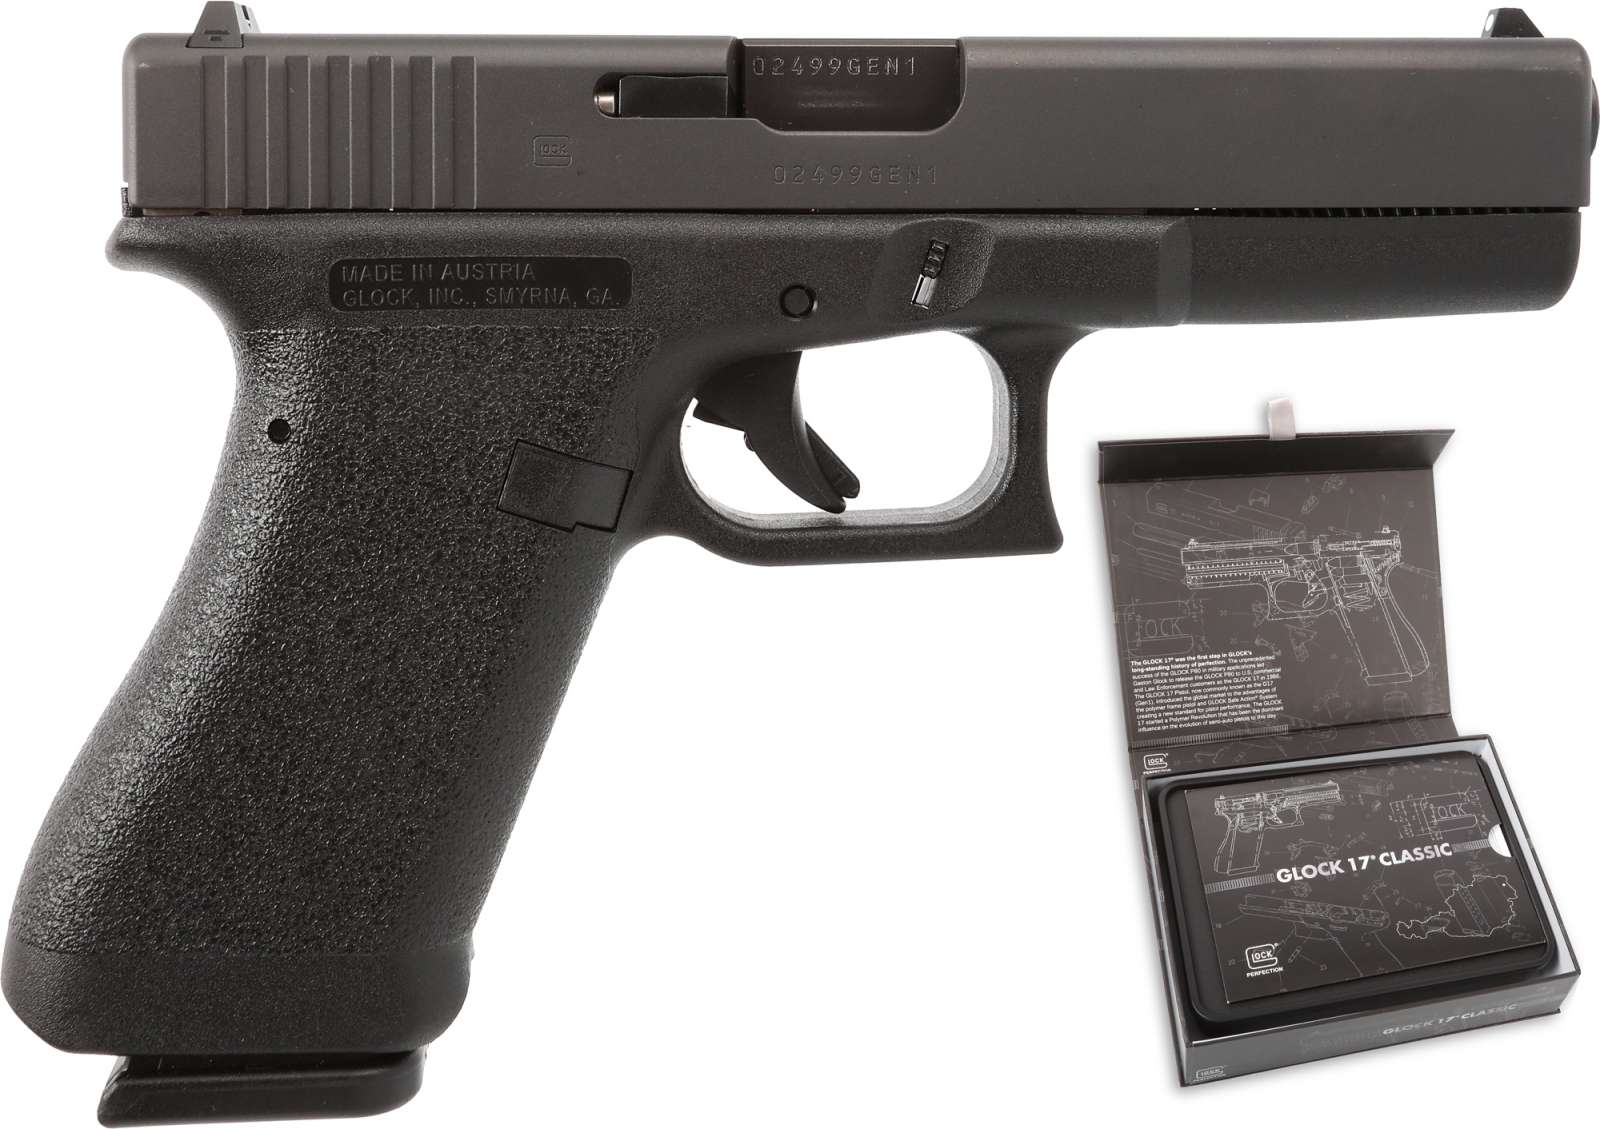 9mm Glock 17 Pistol (Beige) - Machinegun